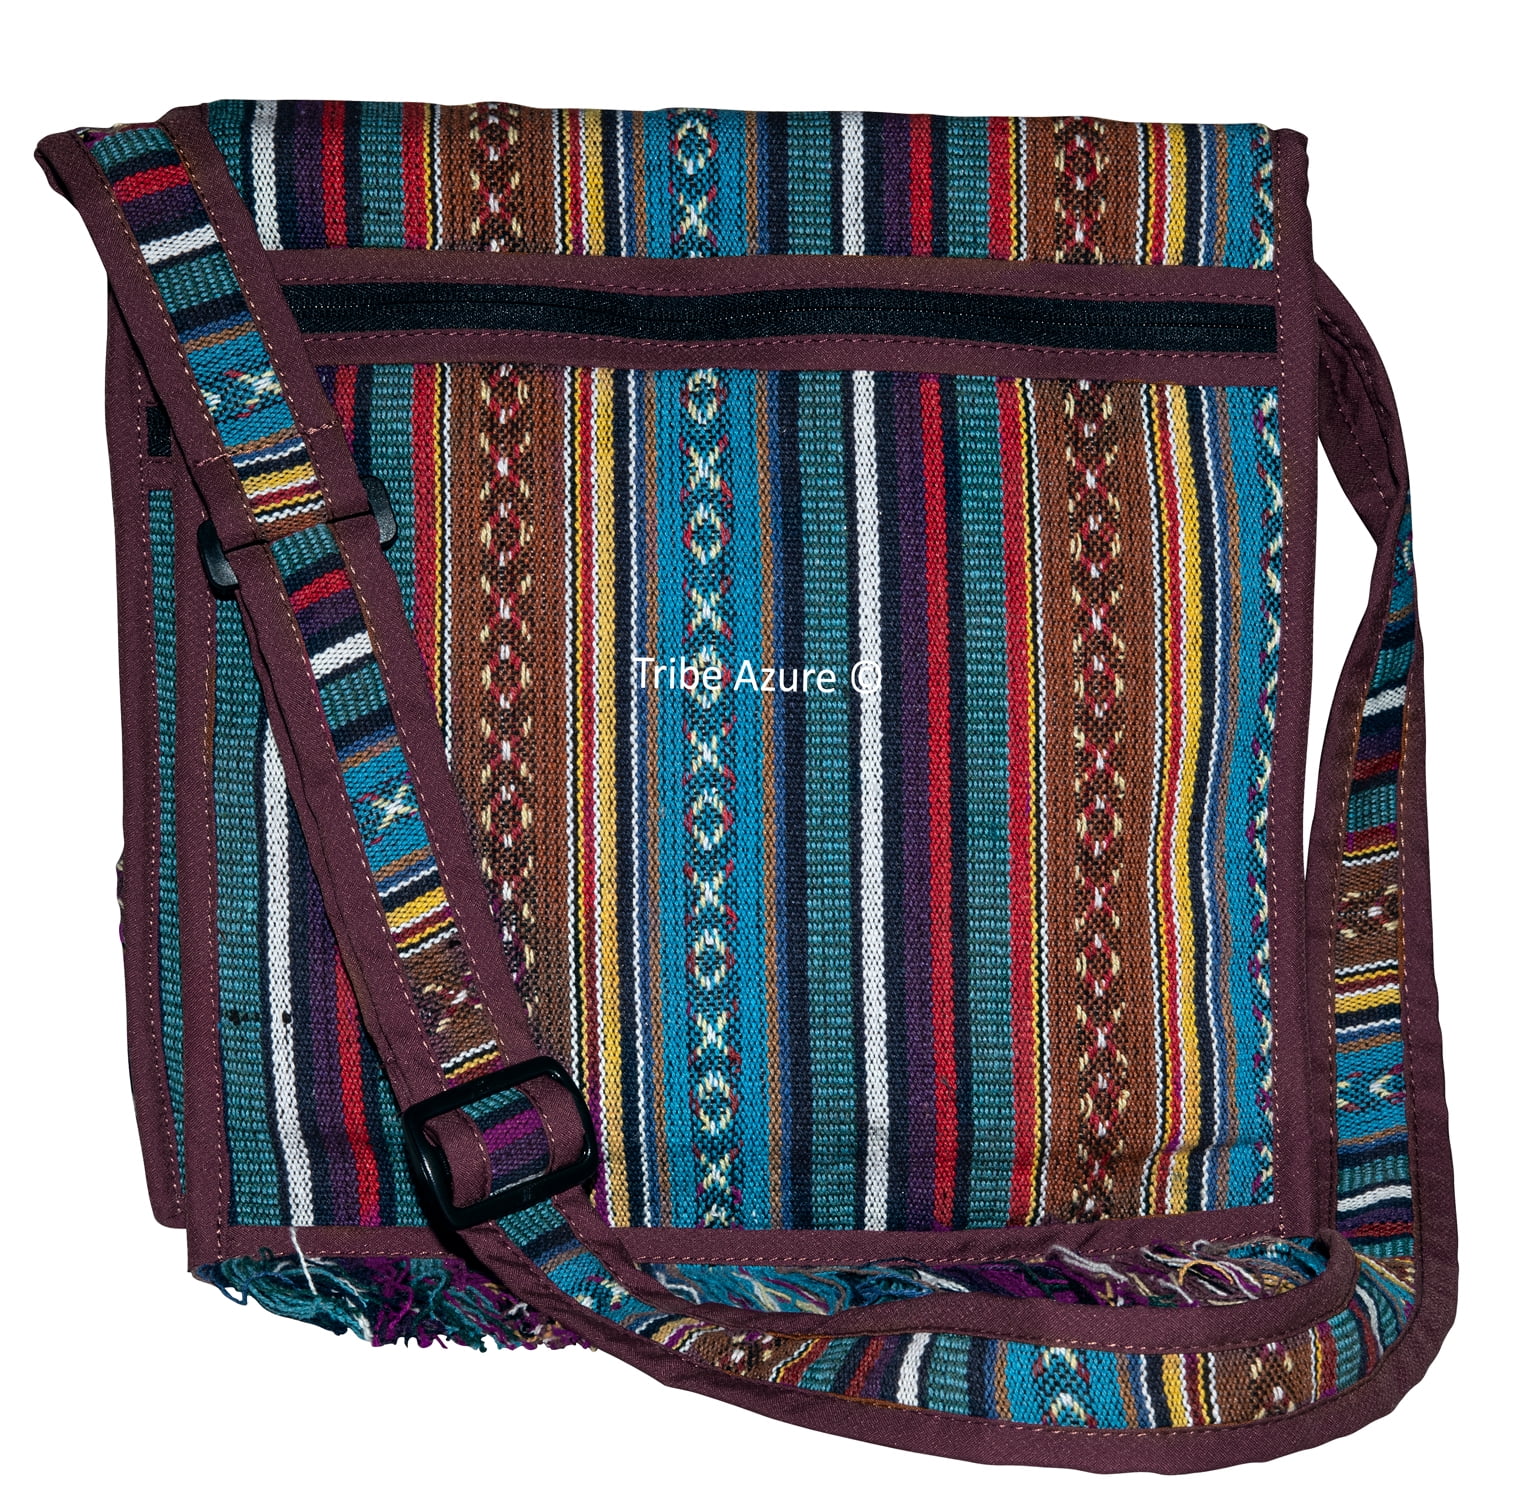 Tribe Azure Woven Adjustable Strap Shoulder Bag Hobo Messenger Women ...